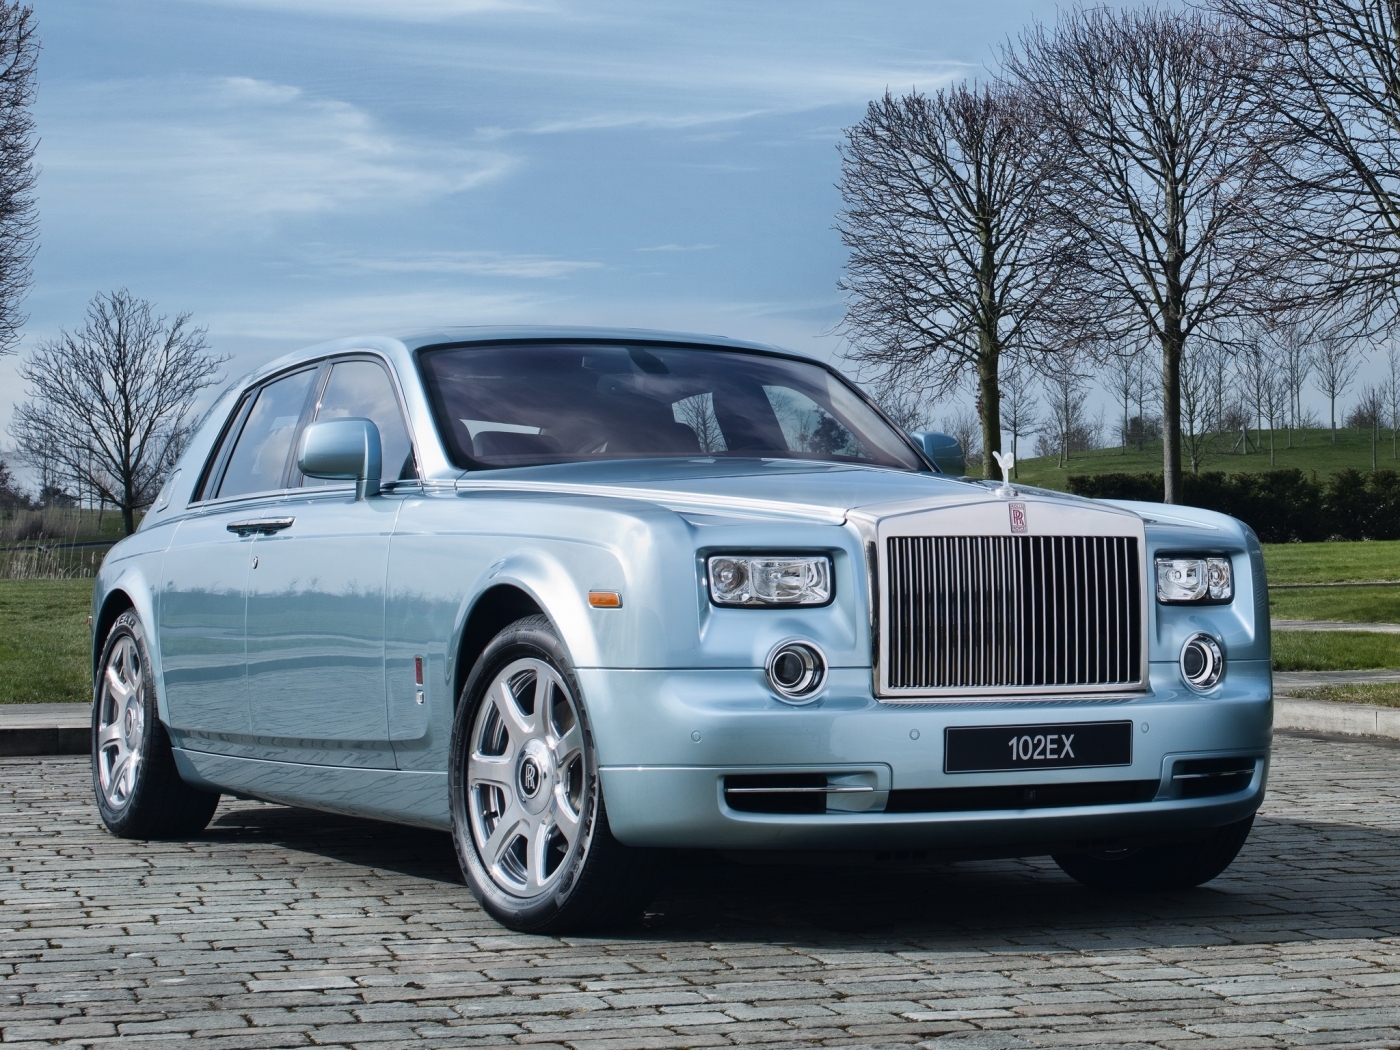 8k Rolls Royce Background